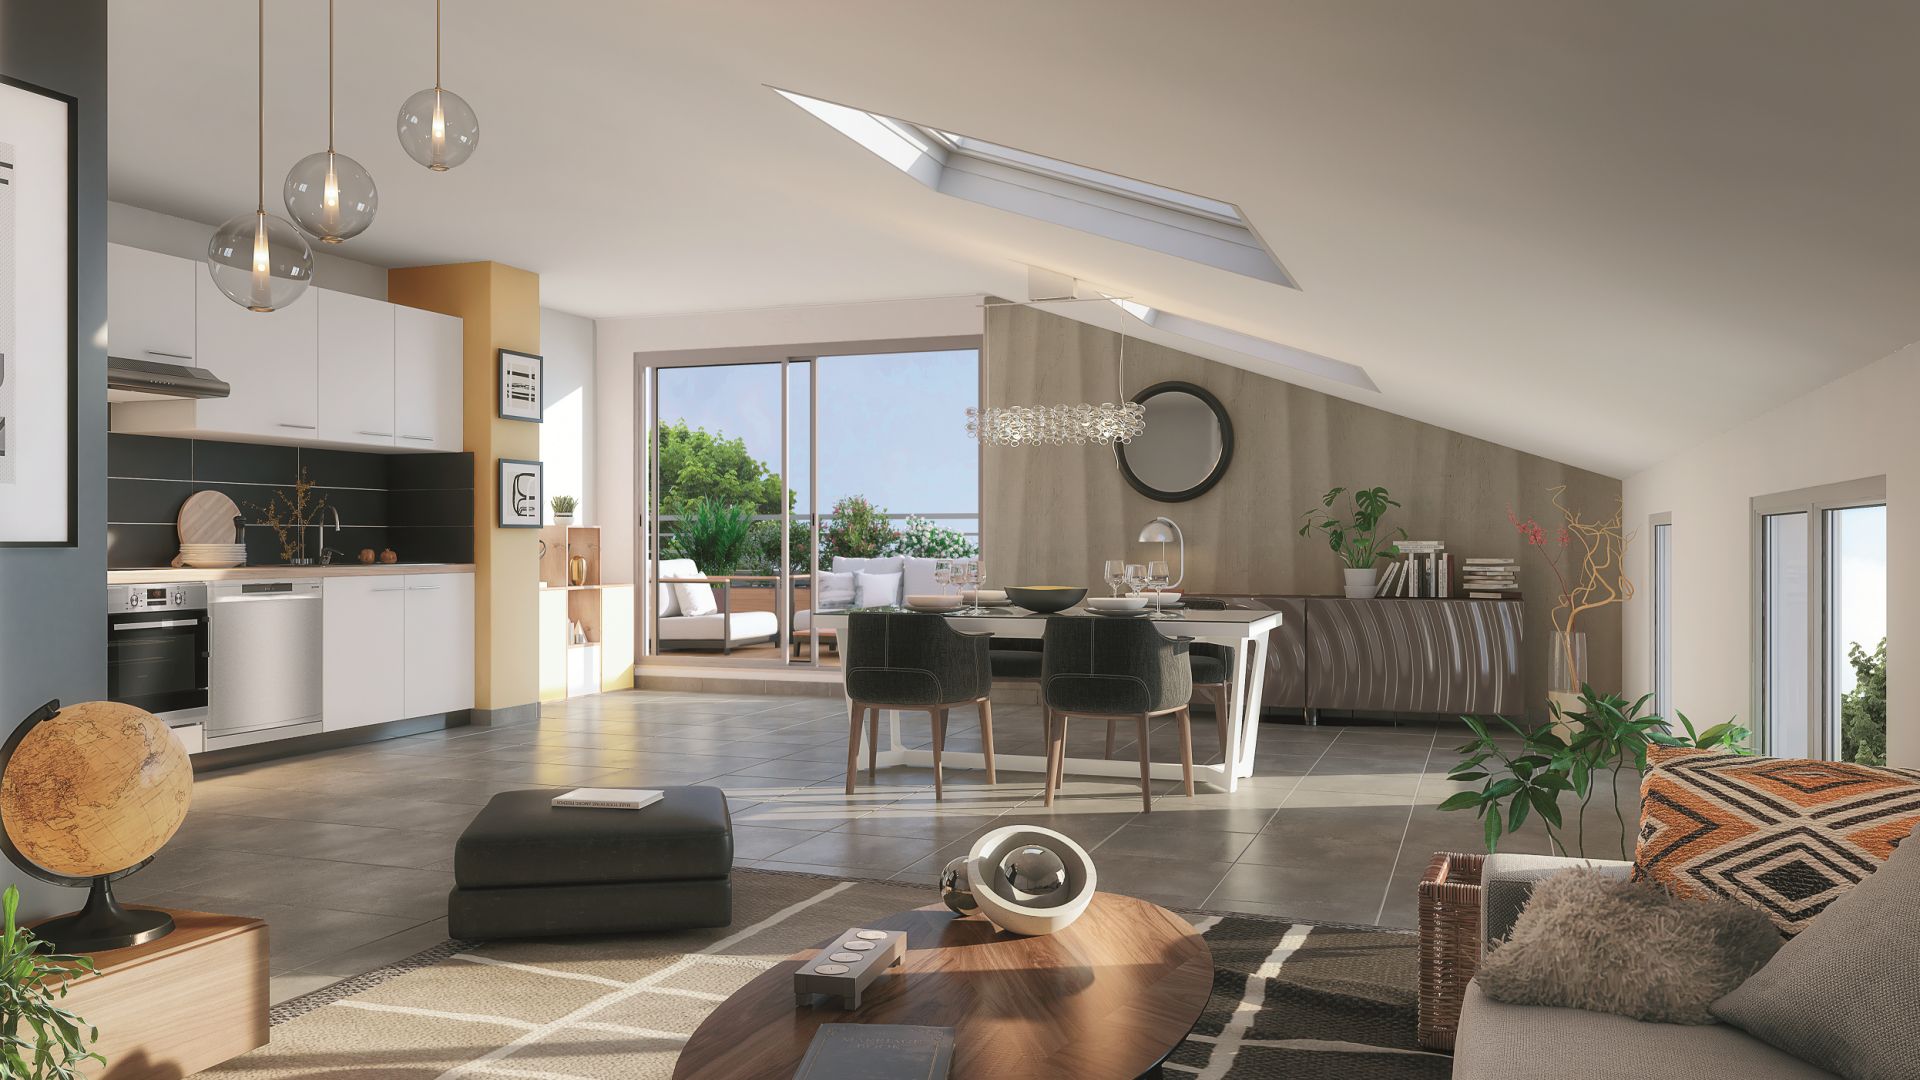 Greencity Immobilier - Résidence Villa Roméo - achat appartements neufs du T2 au T4 duplex - Toulouse - Rangueil - 31400 - vue intérieure